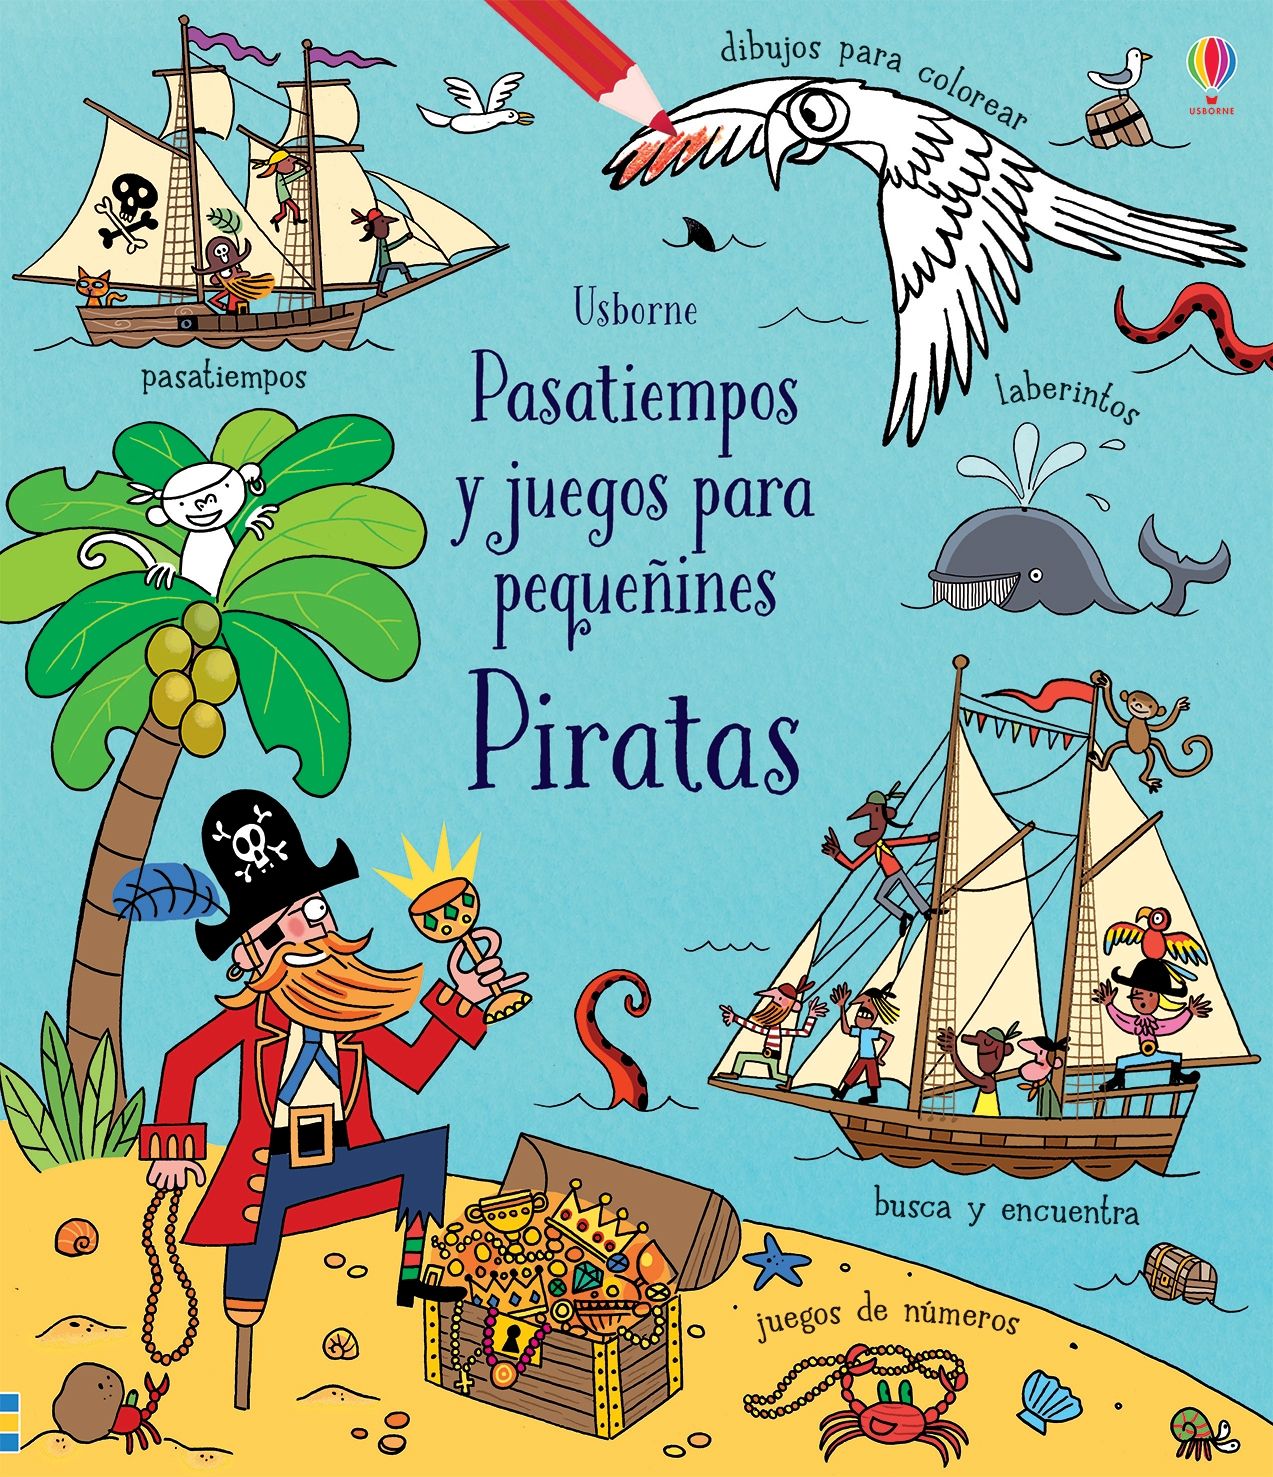 Pasatiempos y juegos para pequeñines - Piratas